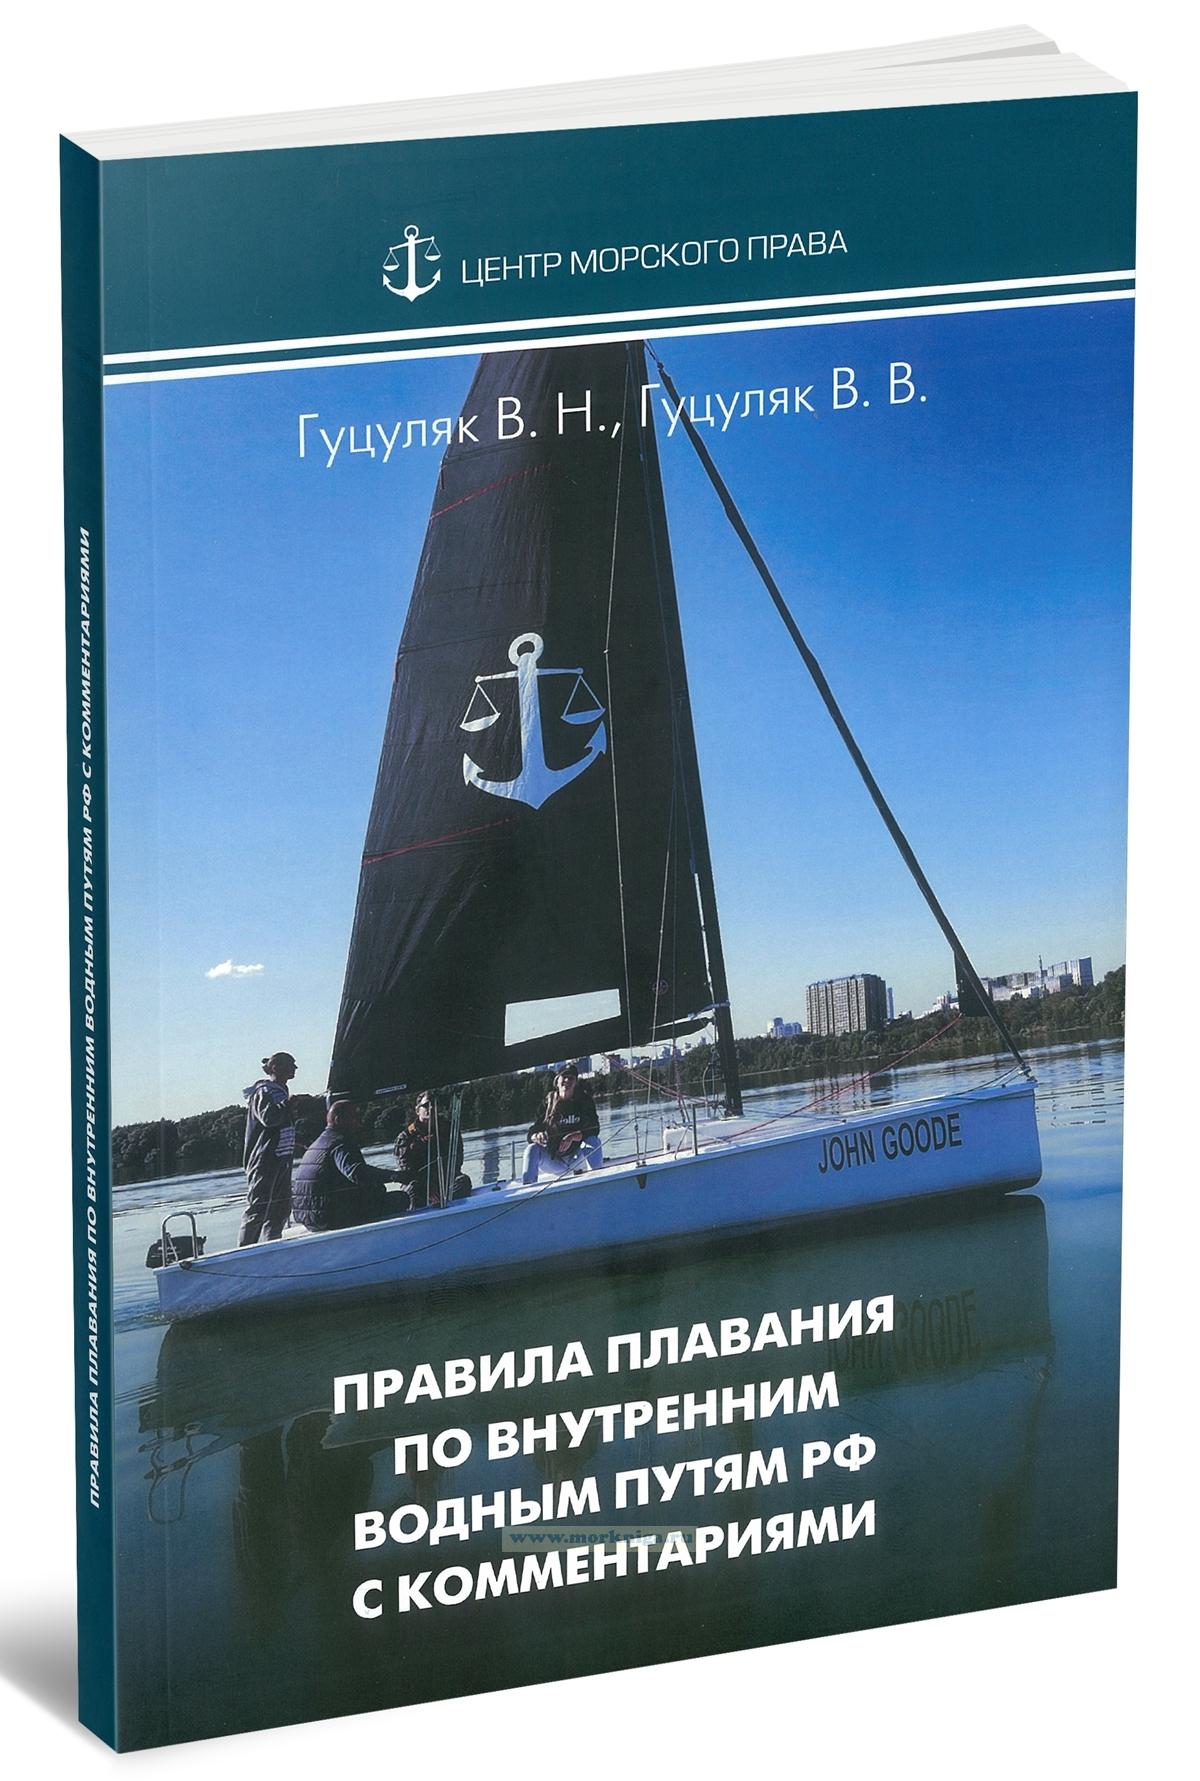 Научно-практический комментарий к правилам плавания судов по внутренним водным путям Российской Федерации